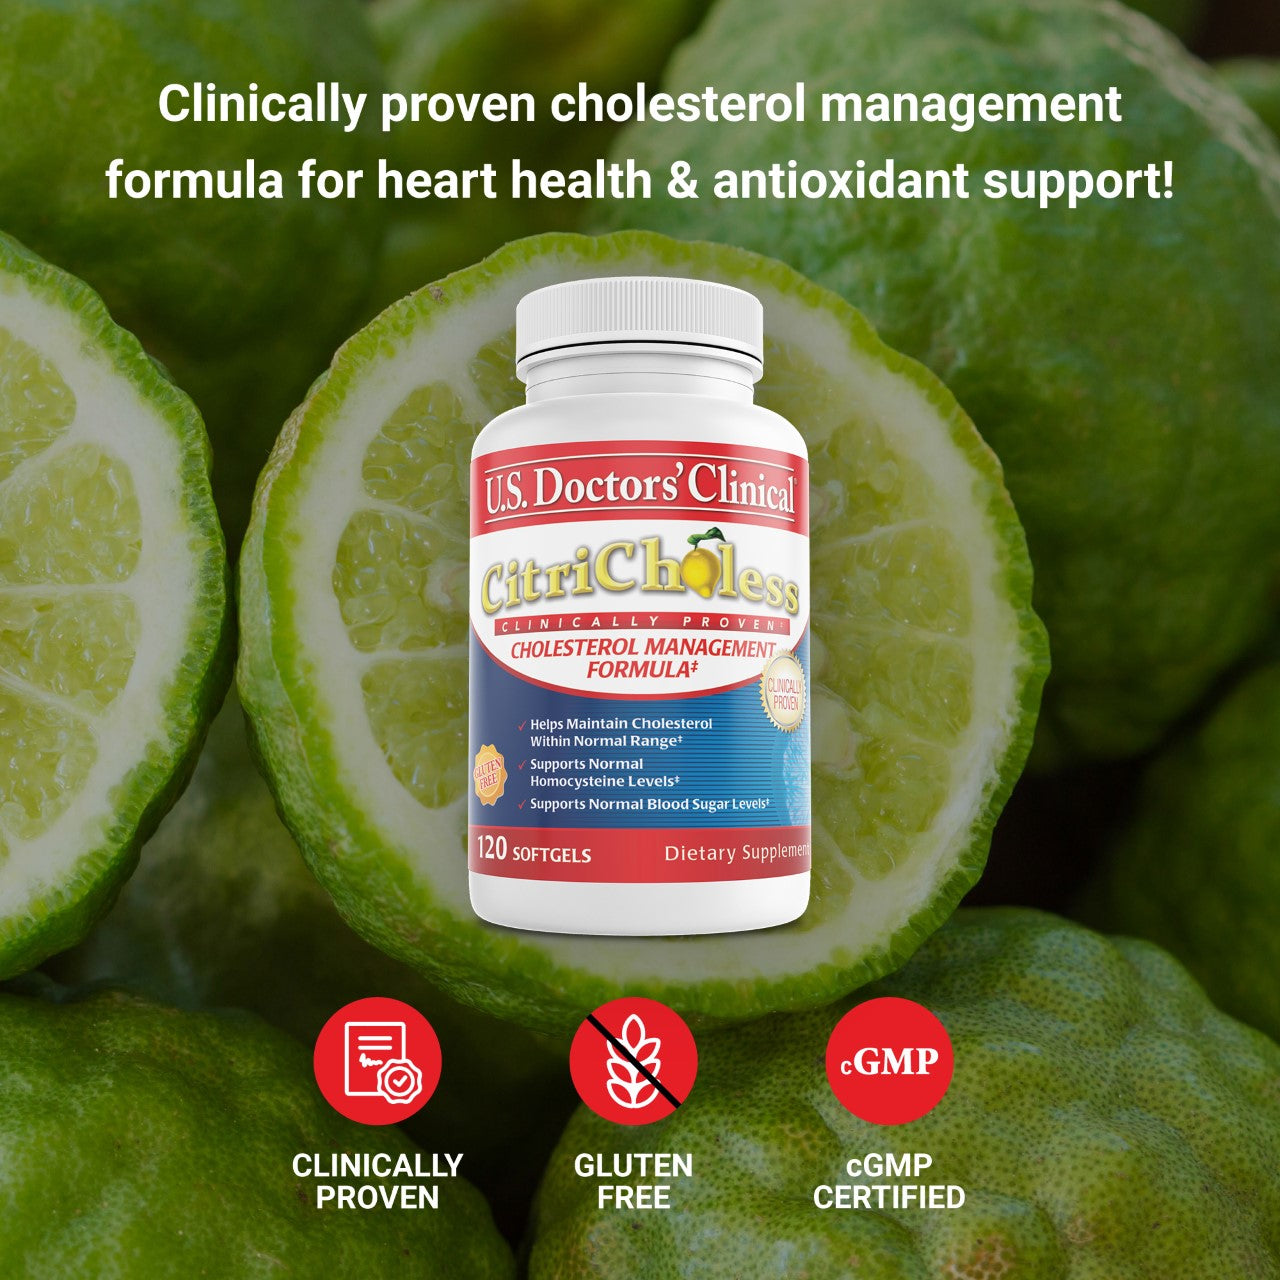 CitriCholess - Cholesterol Management